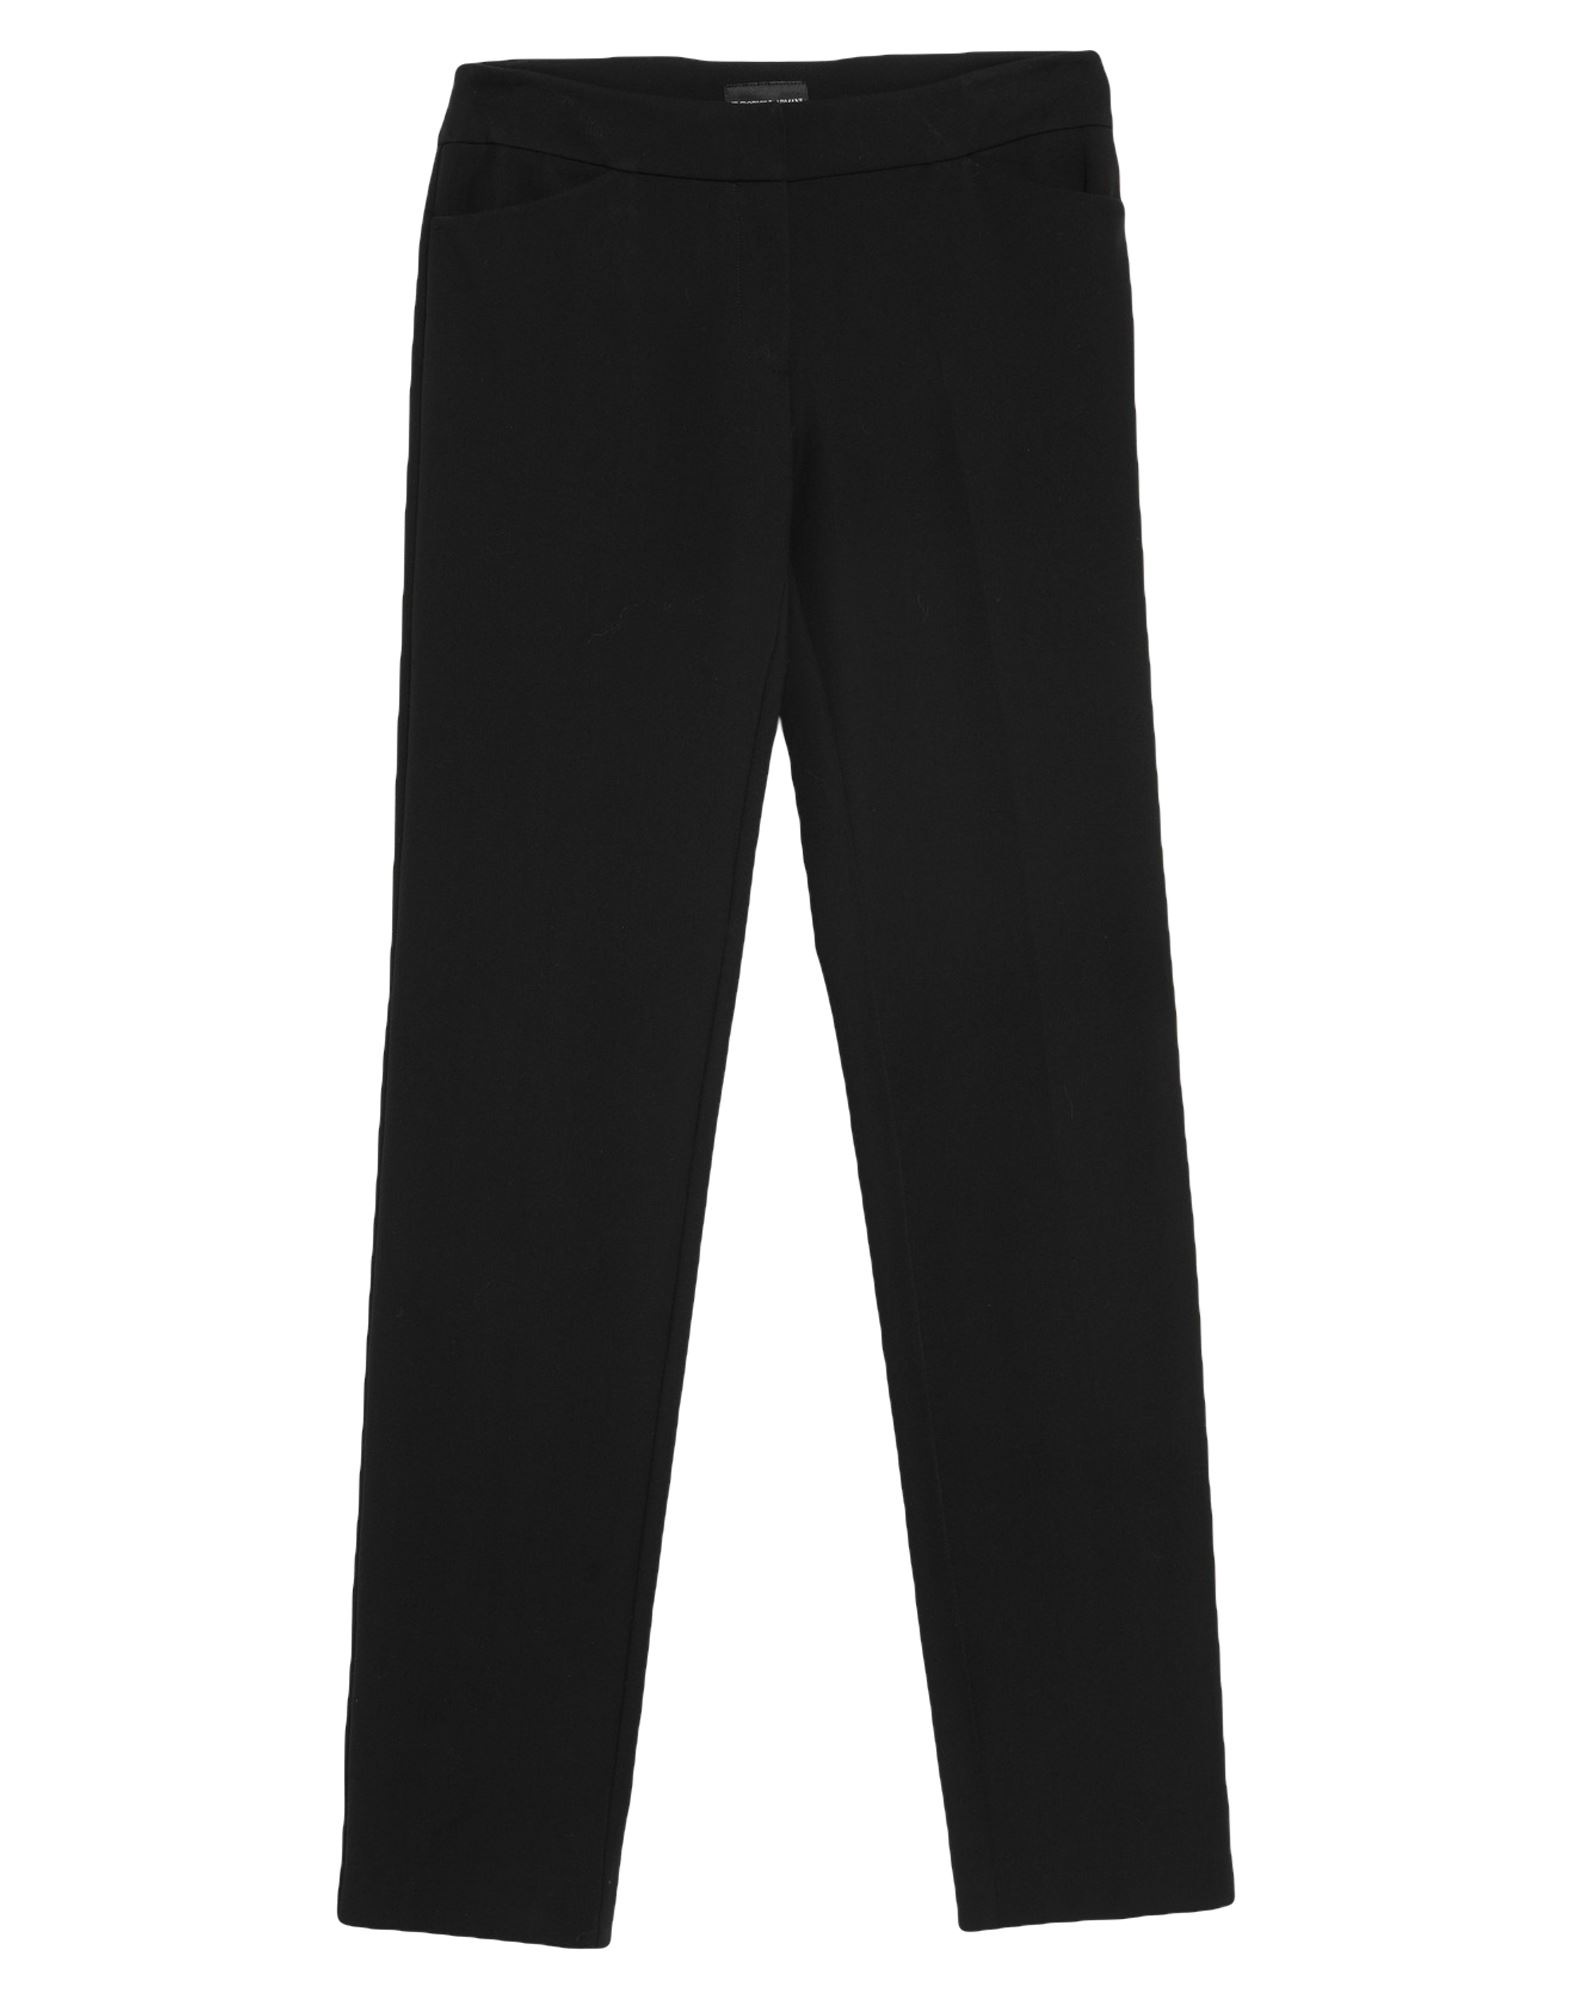 Школьные черные брюки. Armani AJ men's Designer Regular Fit Denim Jeans a6j917b. Черные брюки для девочек. Черные школьные штаны. Чёрные штаны для девочек.